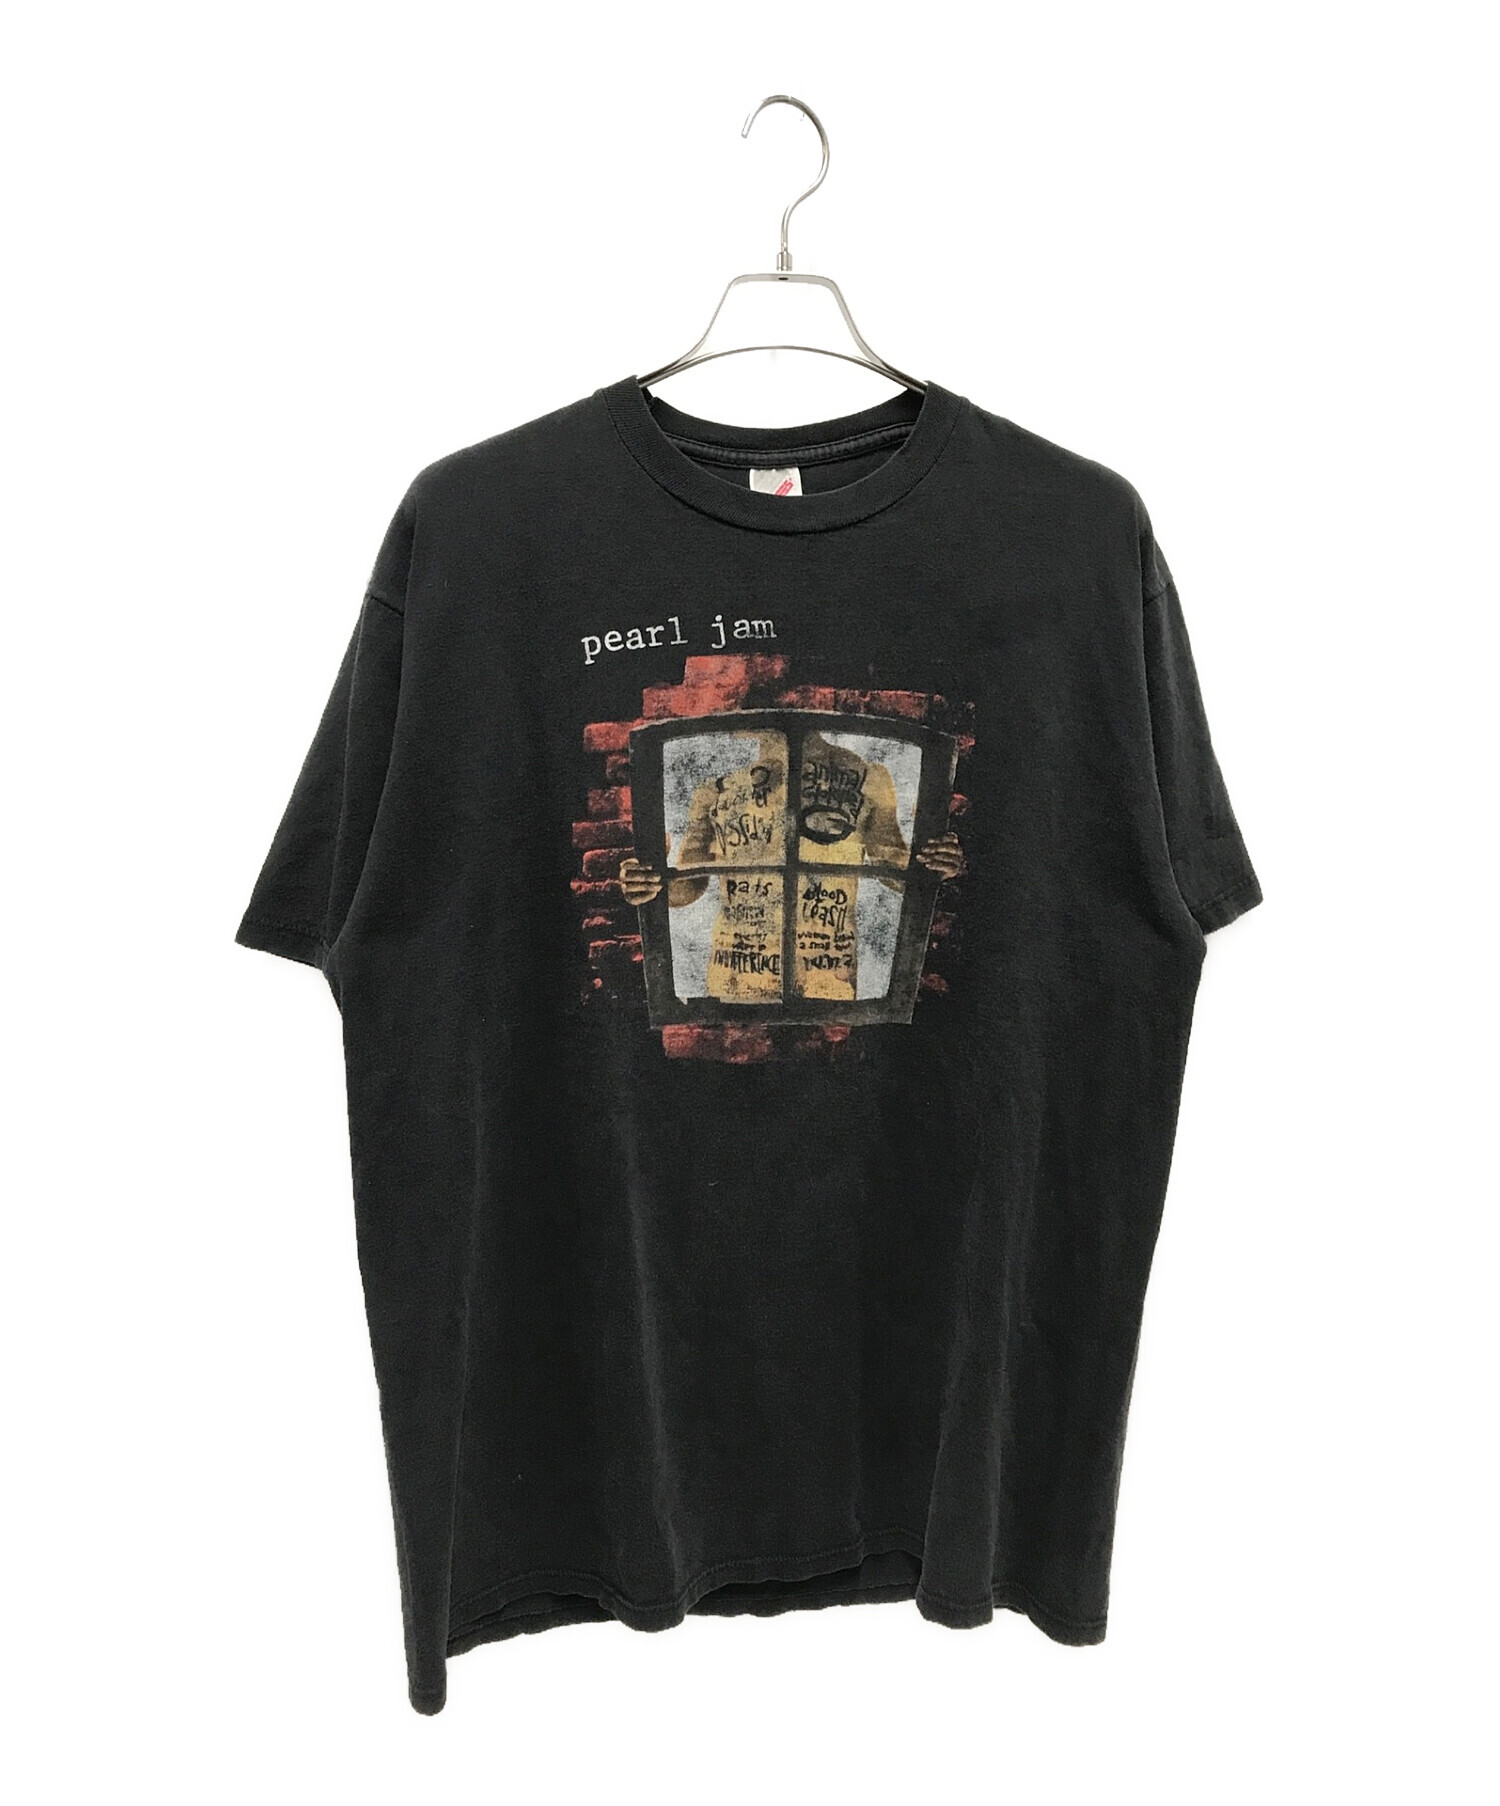 pearl jam (パール・ジャム) 90`sヴィンテージバンドTシャツ ブラック サイズ:XL